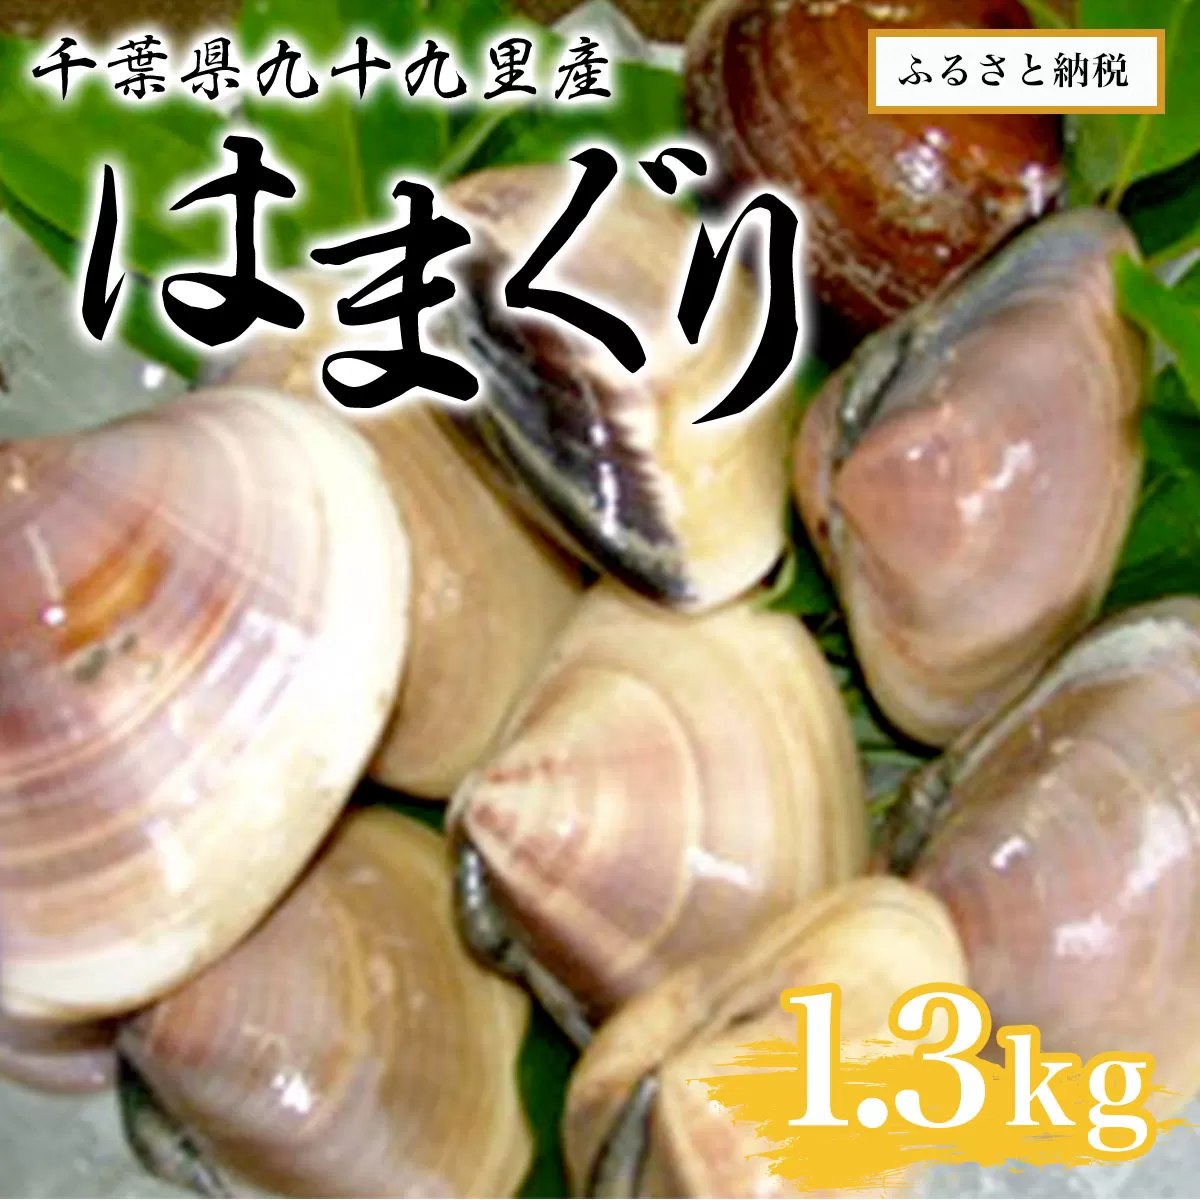 千葉県九十九里産はまぐり1.3kg SMAR001